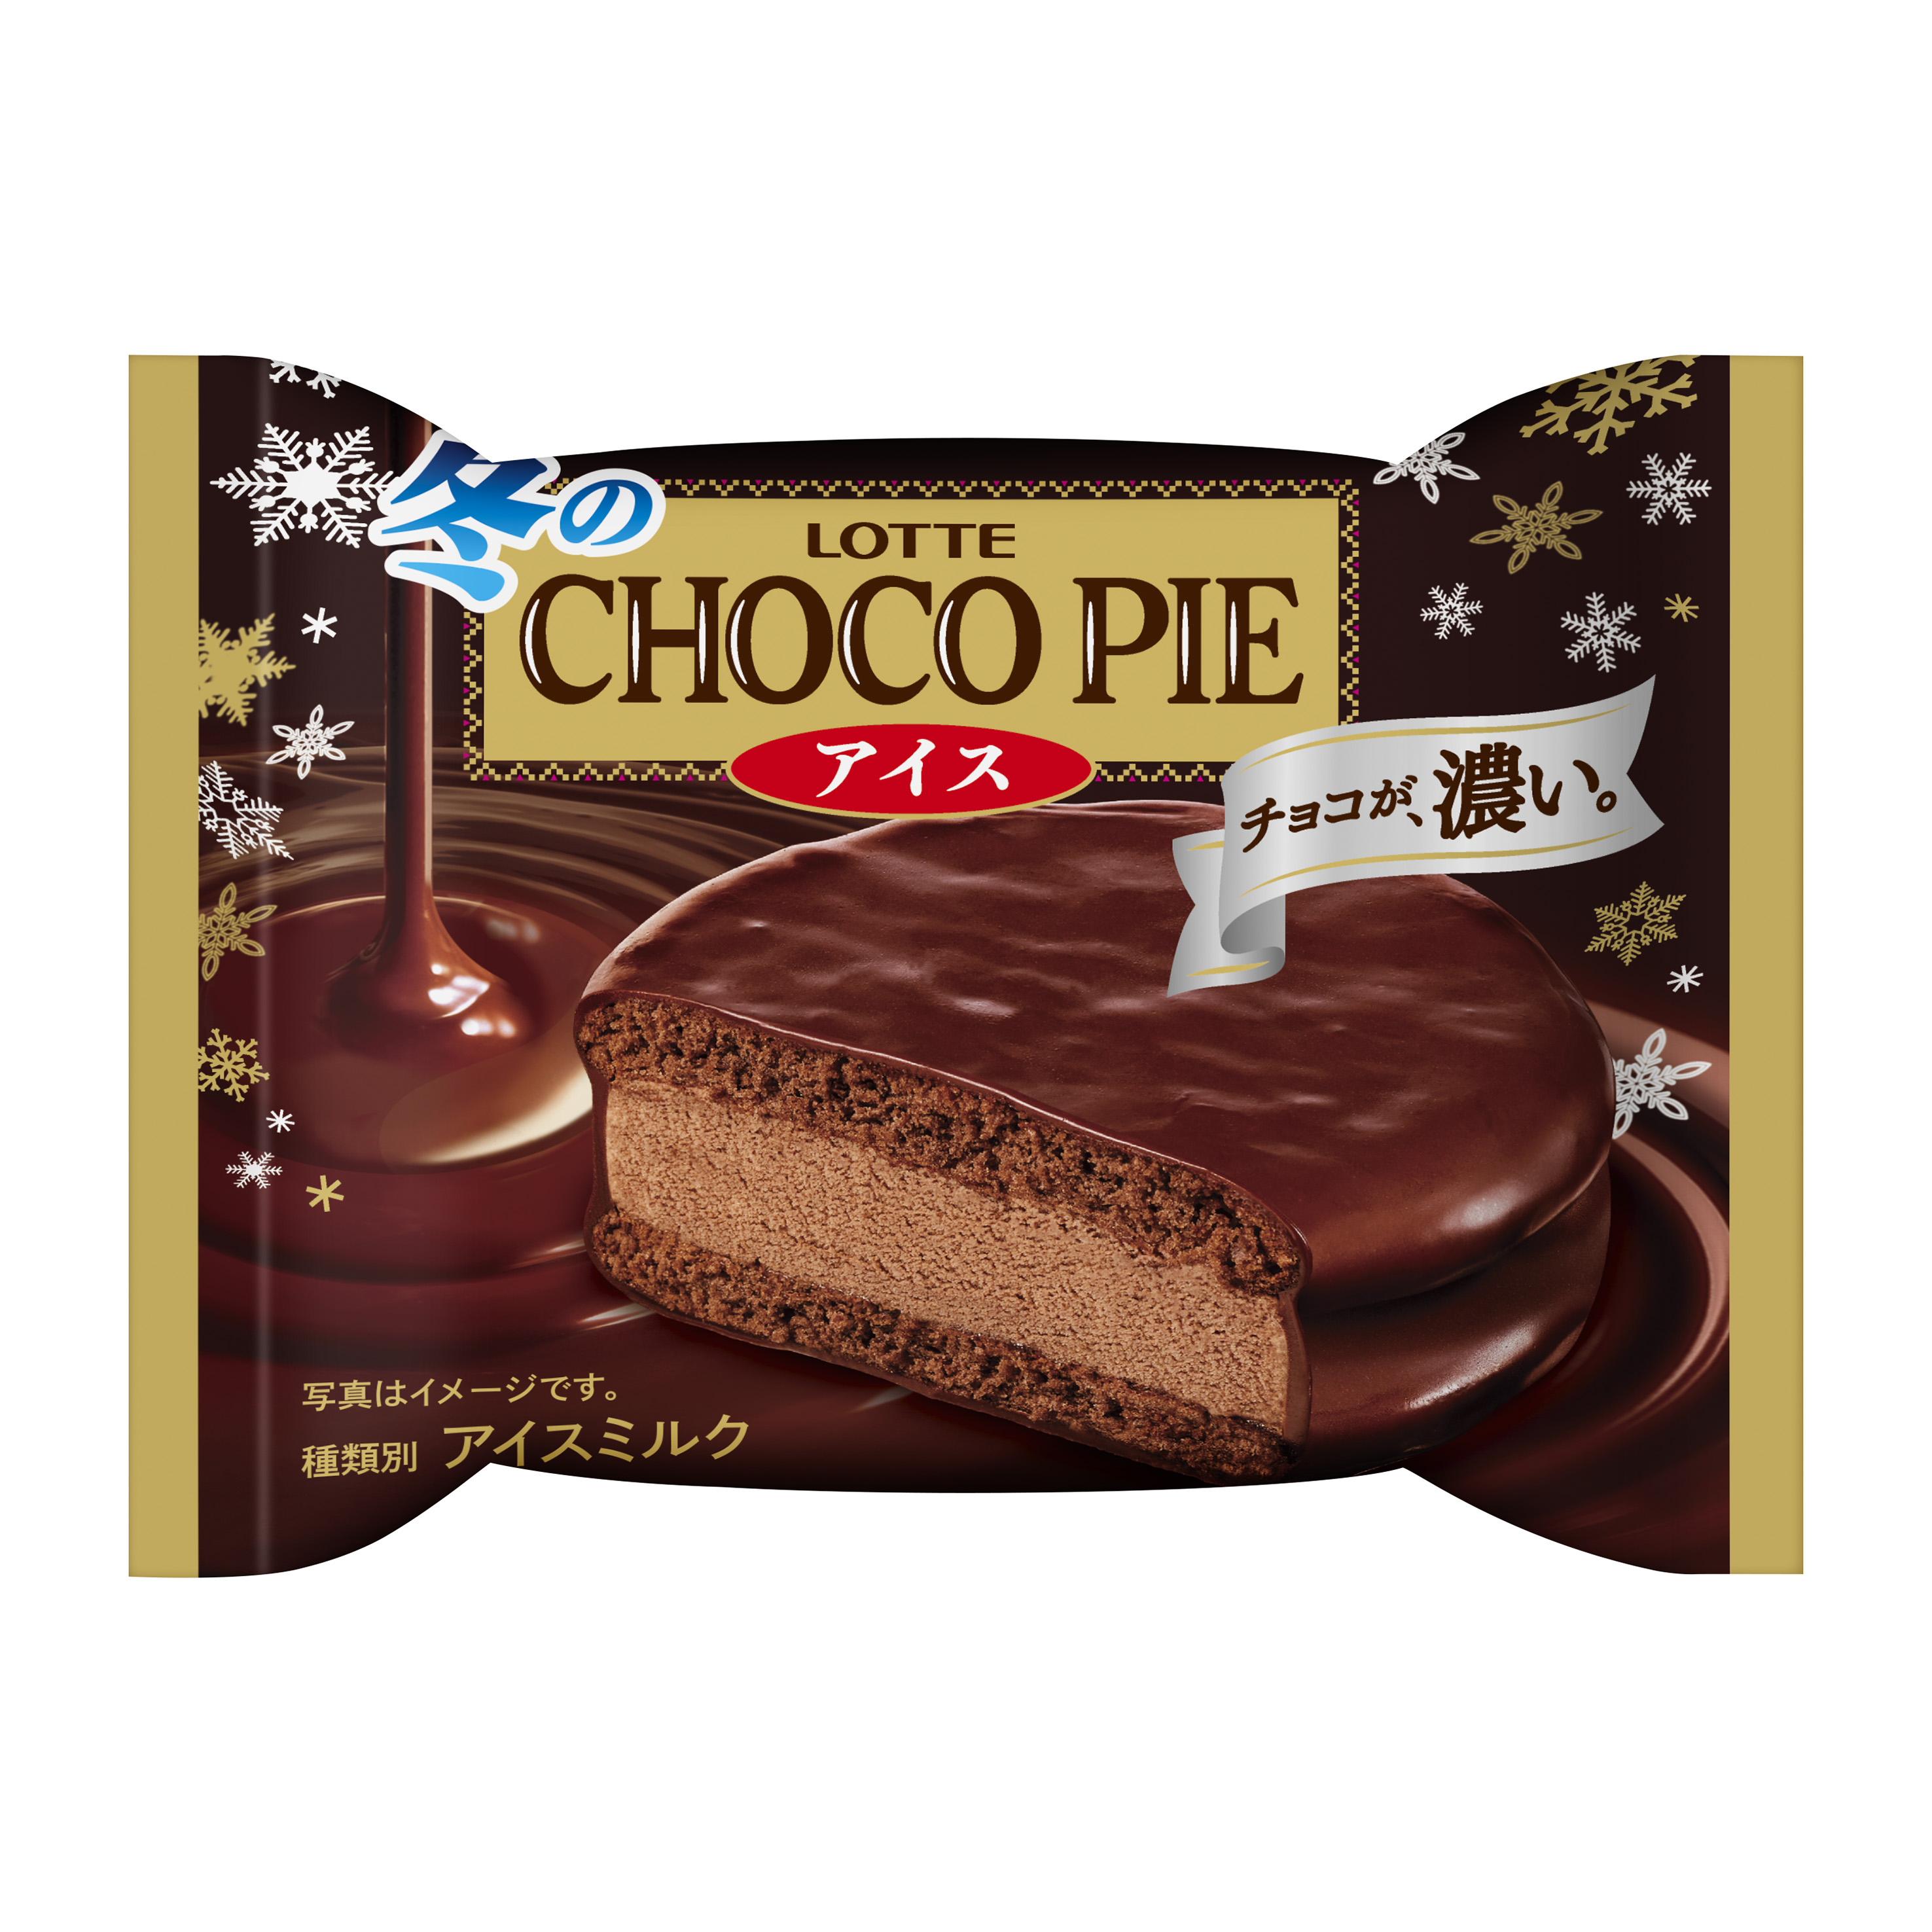 冬にしか出会えない、コクのある濃厚なチョコ感をアイスでも💗『冬のチョコパイアイス』10月19日発売⛄️🍫